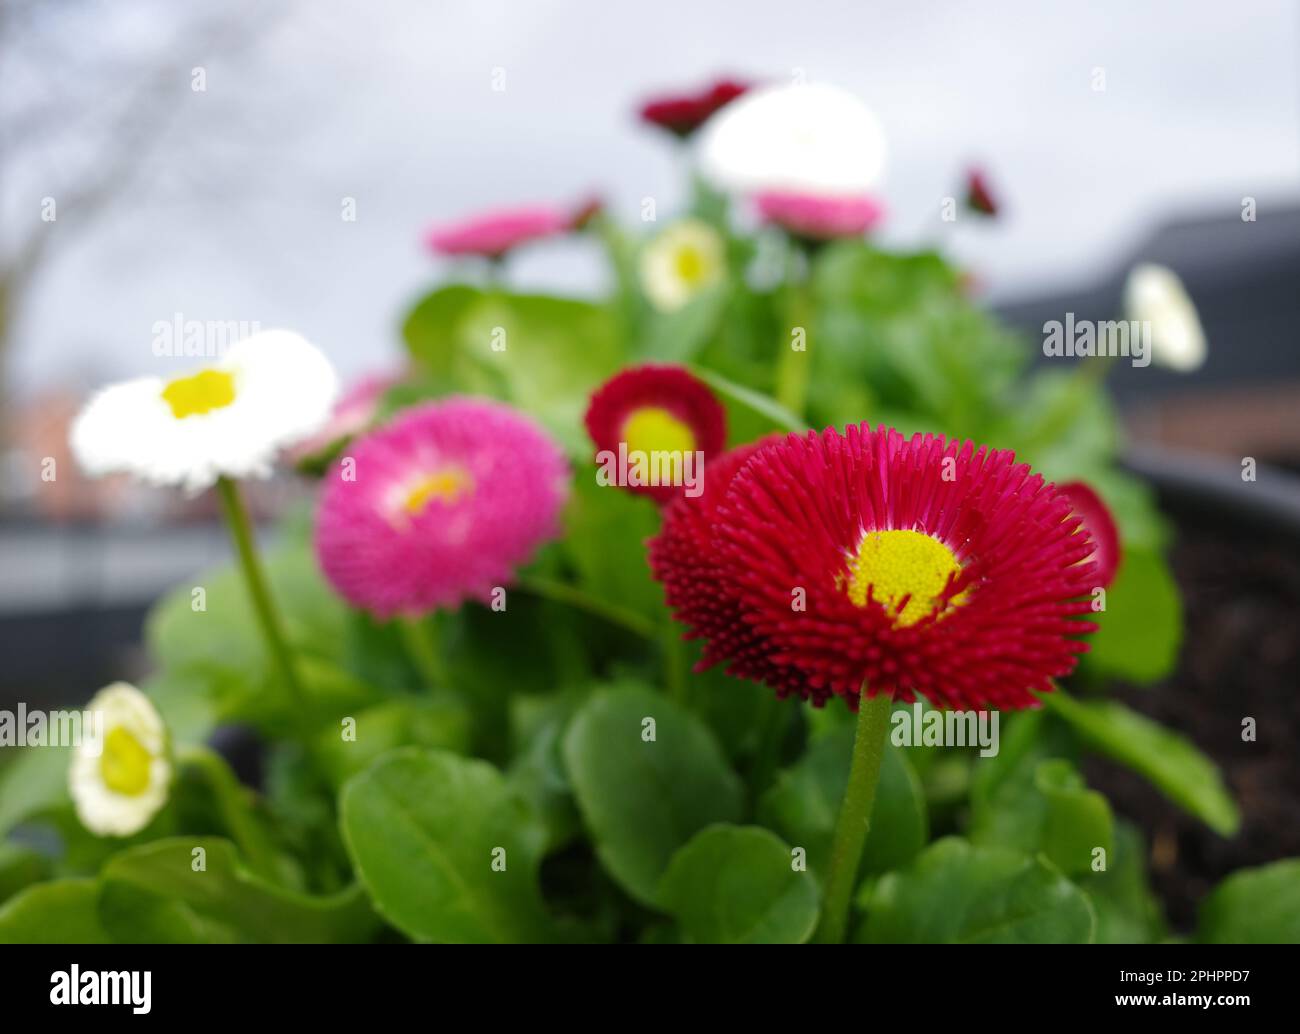 Miscela di piante di margherite inglese coltivate con fiori rossi, rosa e bianchi. Concentratevi sul primo fiore. Gli altri sono sfocati. Foto Stock